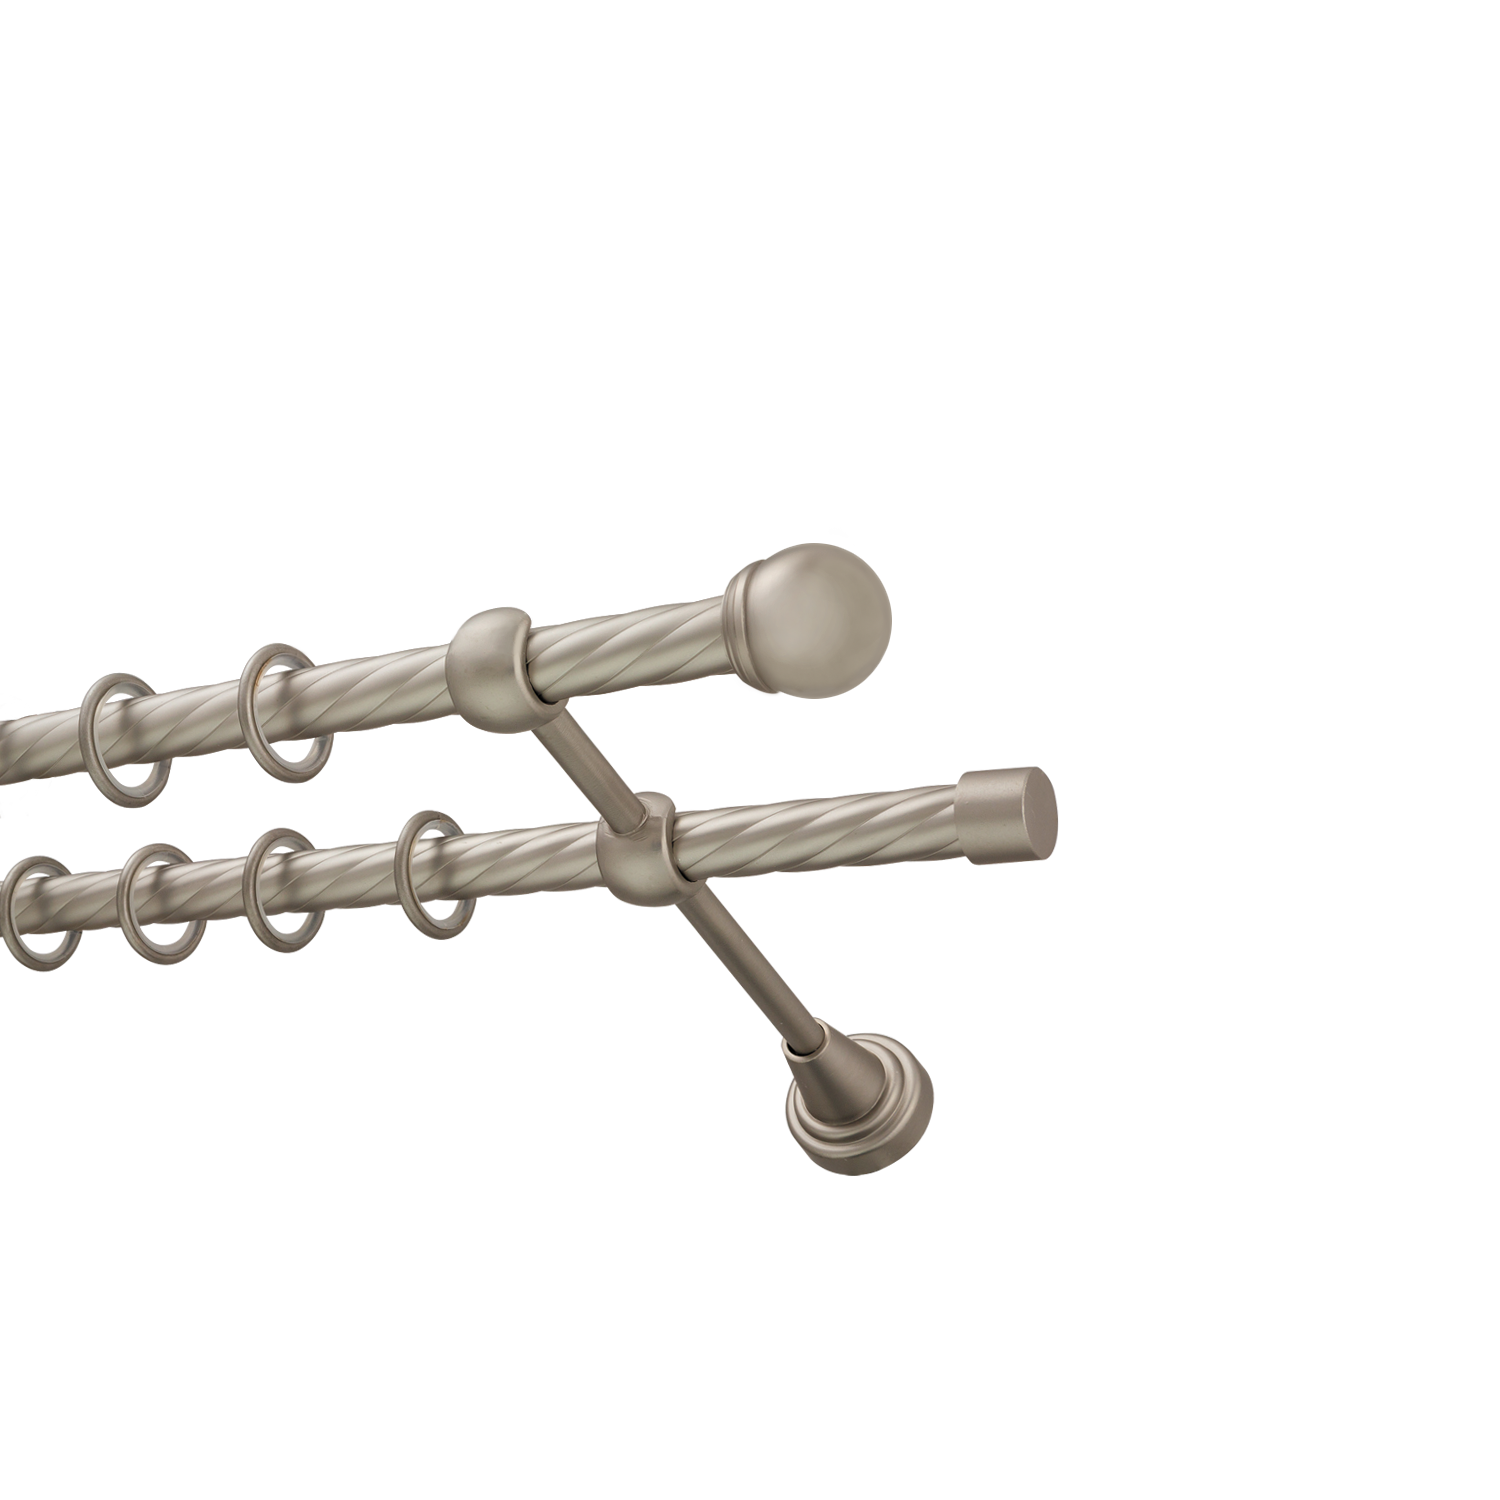 Металлический карниз для штор Вива, двухрядный 16/16 мм, сталь, витая штанга, длина 200 см